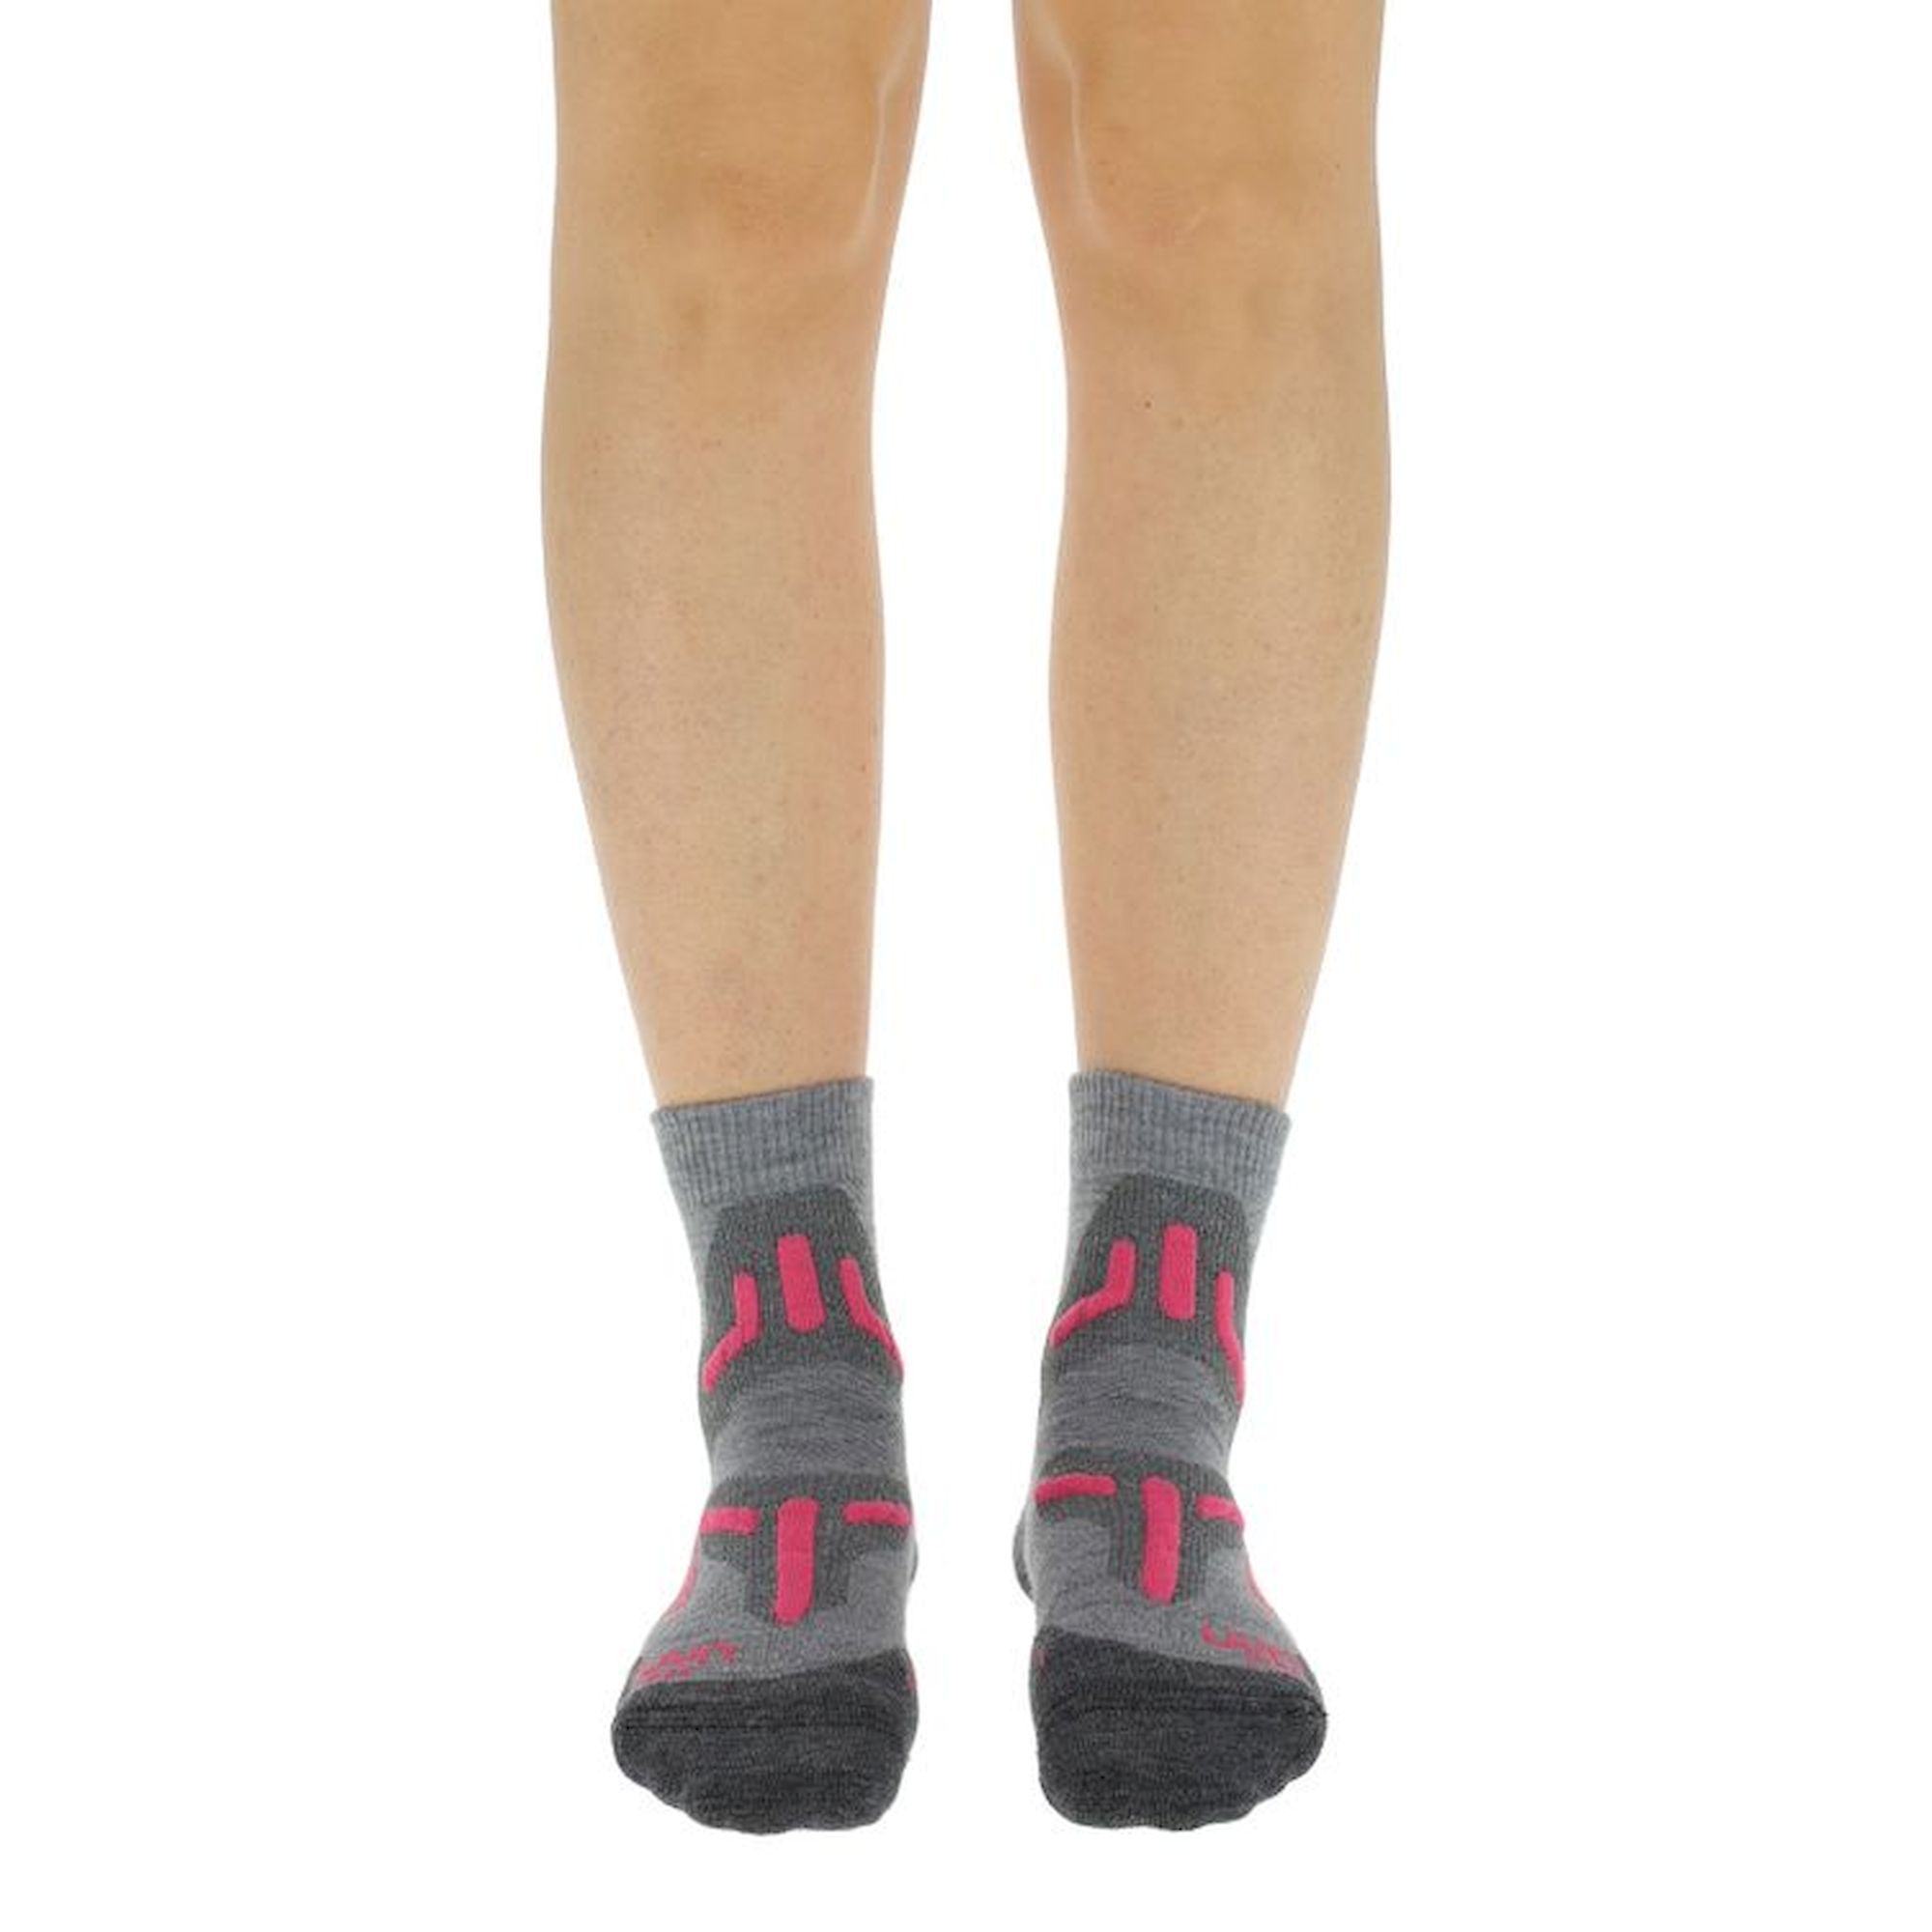 Uyn Trekking 2In Merino Low Cut Socks - Chaussettes randonnée femme